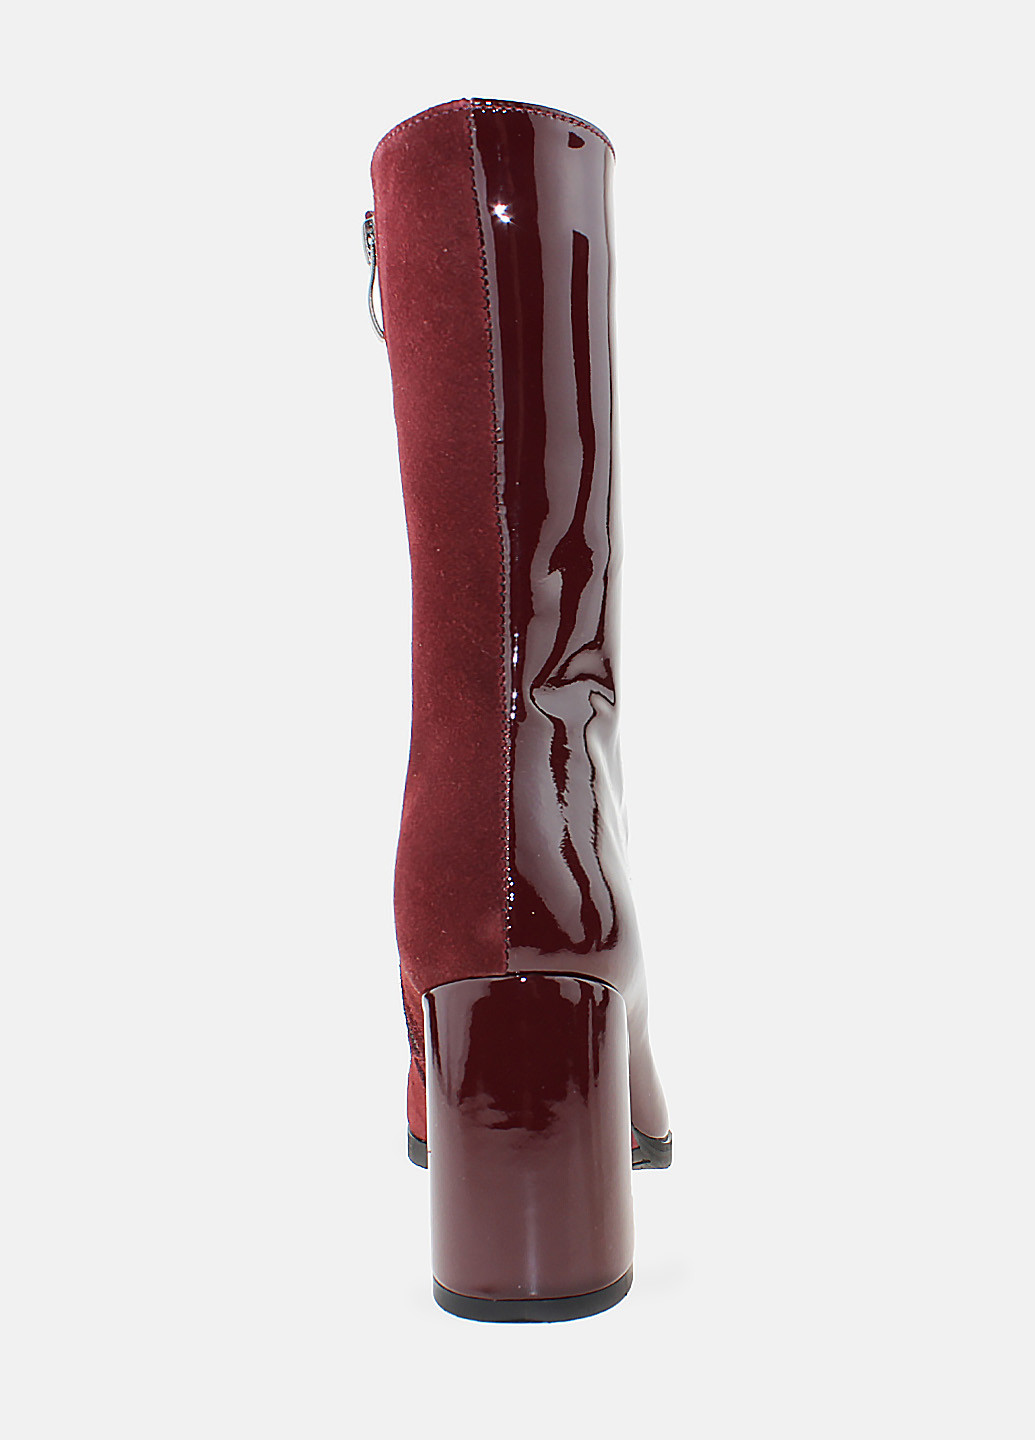 Осенние ботинки rc013b-8057-81 бордовый Crisma из натуральной замши